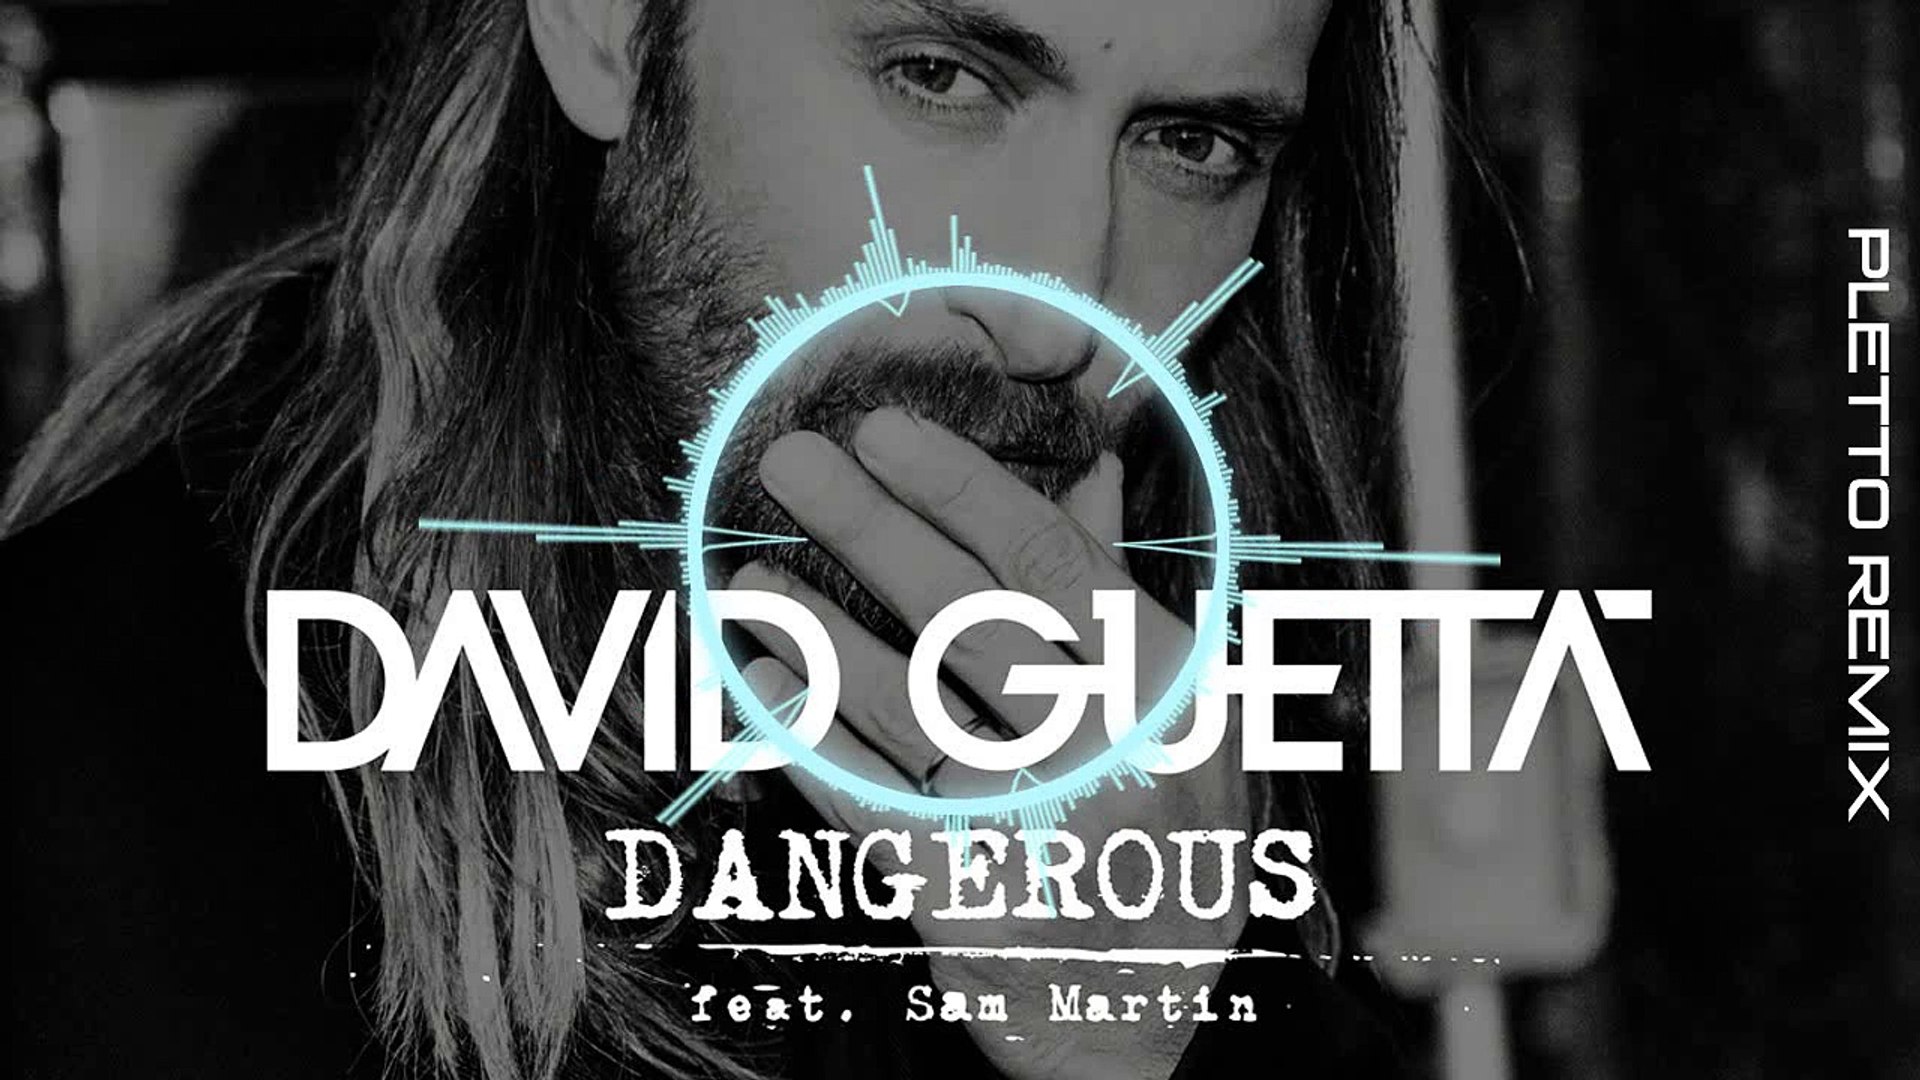 David guetta 2023. David Guetta Dangerous. David Guetta - Dangerous кадры. Русская песня на минус David Guetta Dangerous.